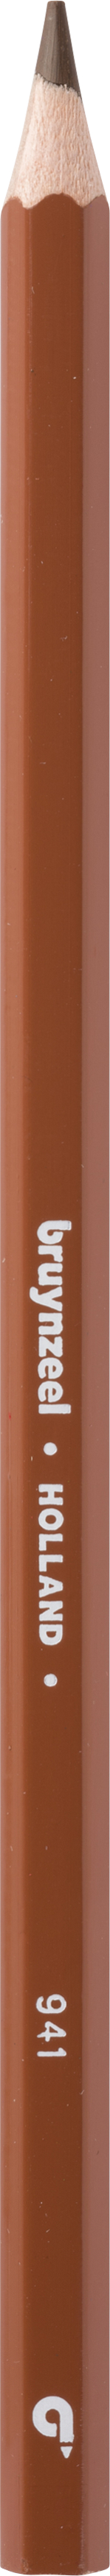 BRUYNZEEL Crayon de couleur Super 3.3mm 60516941 marron clair